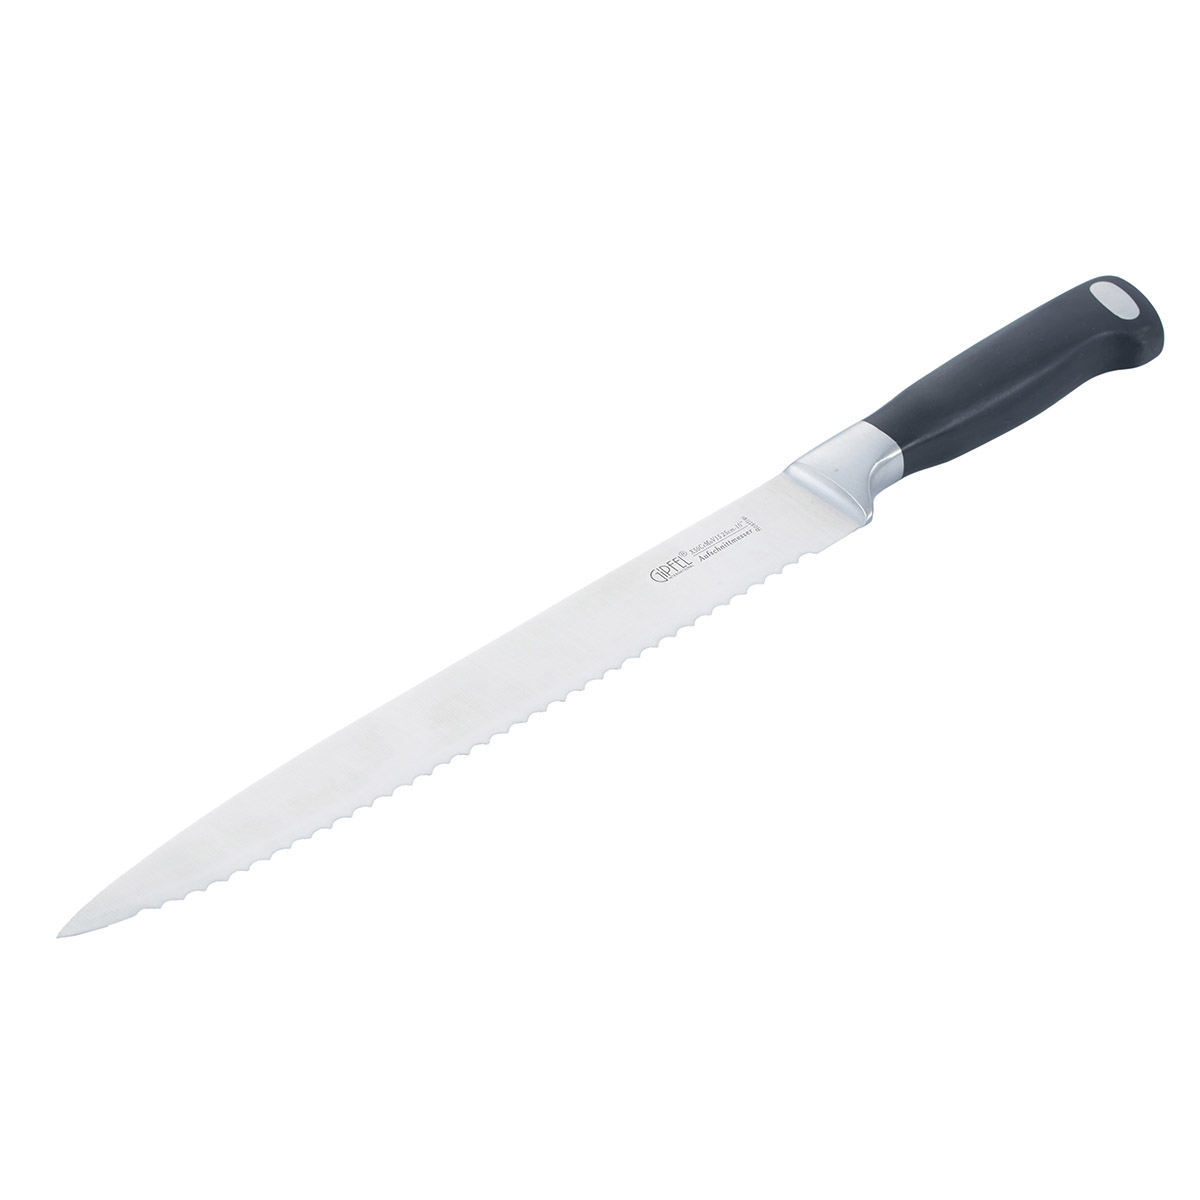 Нож разделочный Gipfel Professional Line 6766 нож разделочный gipfel new professional 8650 20 см